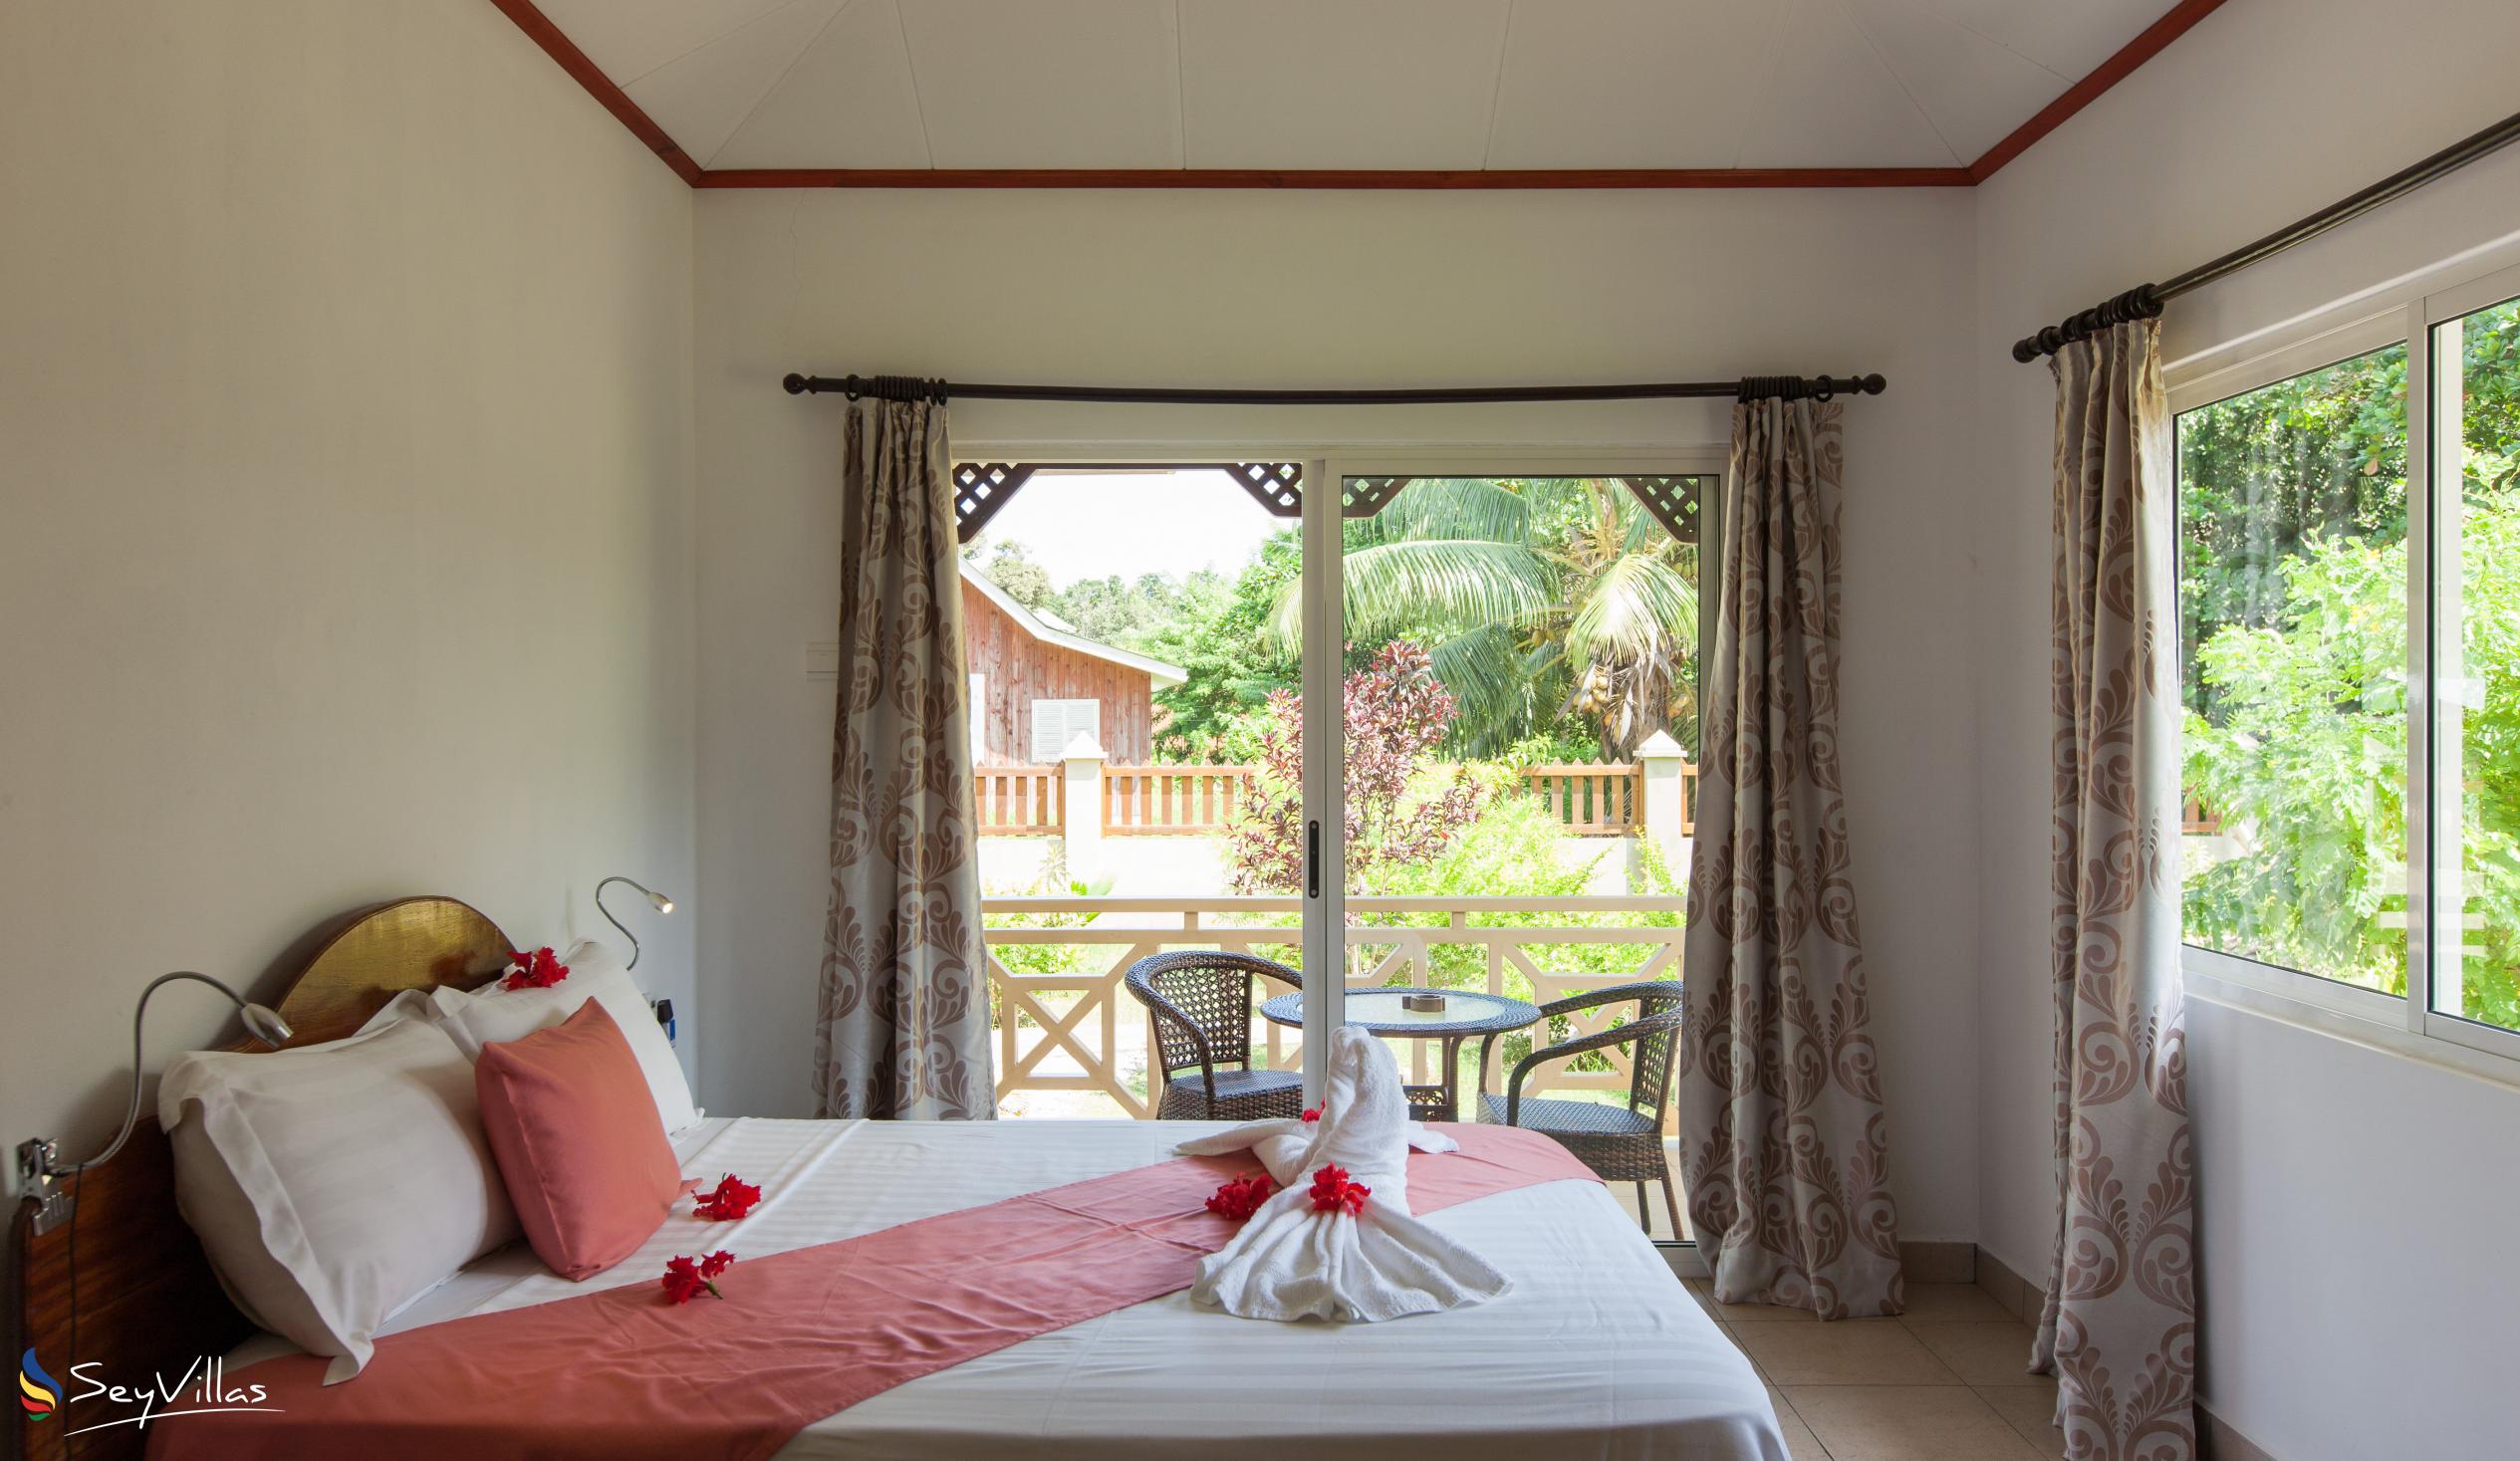 Photo 48: Hostellerie La Digue - 2-Bedroom Chalet - La Digue (Seychelles)